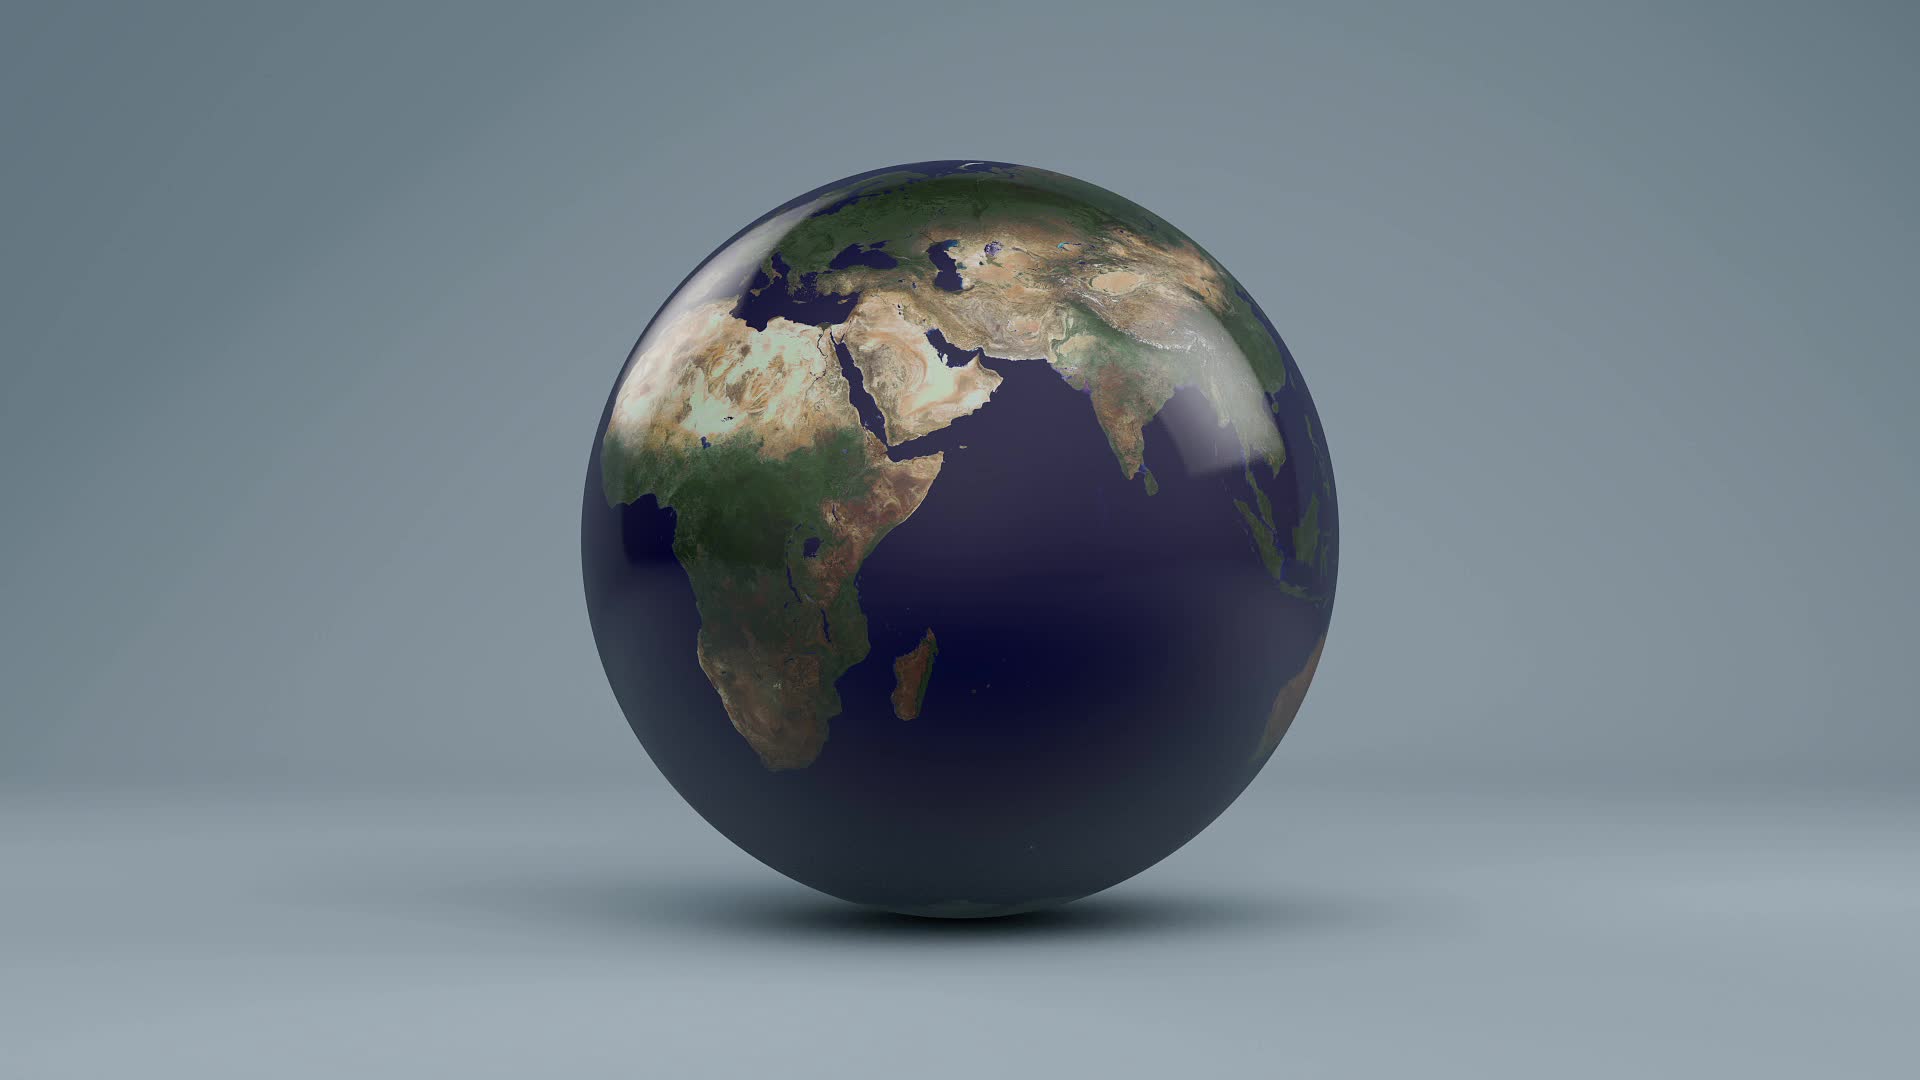 Thế giới bao la đang đợi bạn khám phá và đồ họa quay quanh quả đất 3D sẽ giúp bạn quay vòng trên hành tinh xanh trong vòng tích tắc. Với những hình ảnh độc đáo và chân thực, chúng tôi cam đoan bạn sẽ không khỏi trầm trồ kinh ngạc trước kiệt tác nghệ thuật này.